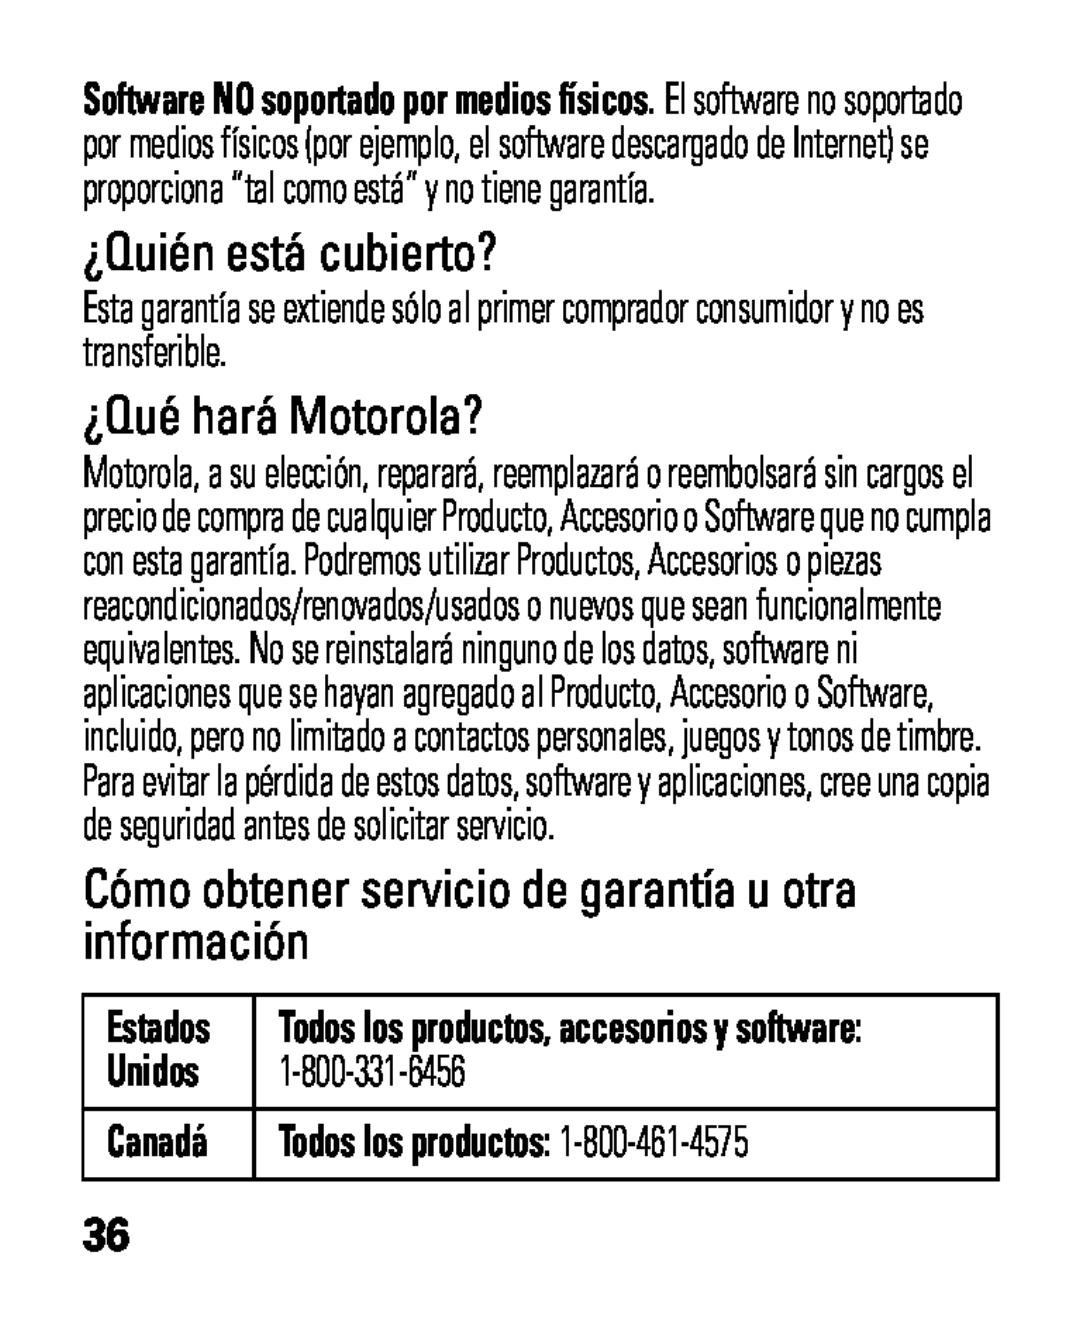 Motorola HK100 ¿Quién está cubierto?, ¿Qué hará Motorola?, Estados, Todos los productos, accesorios y software, Canadá 